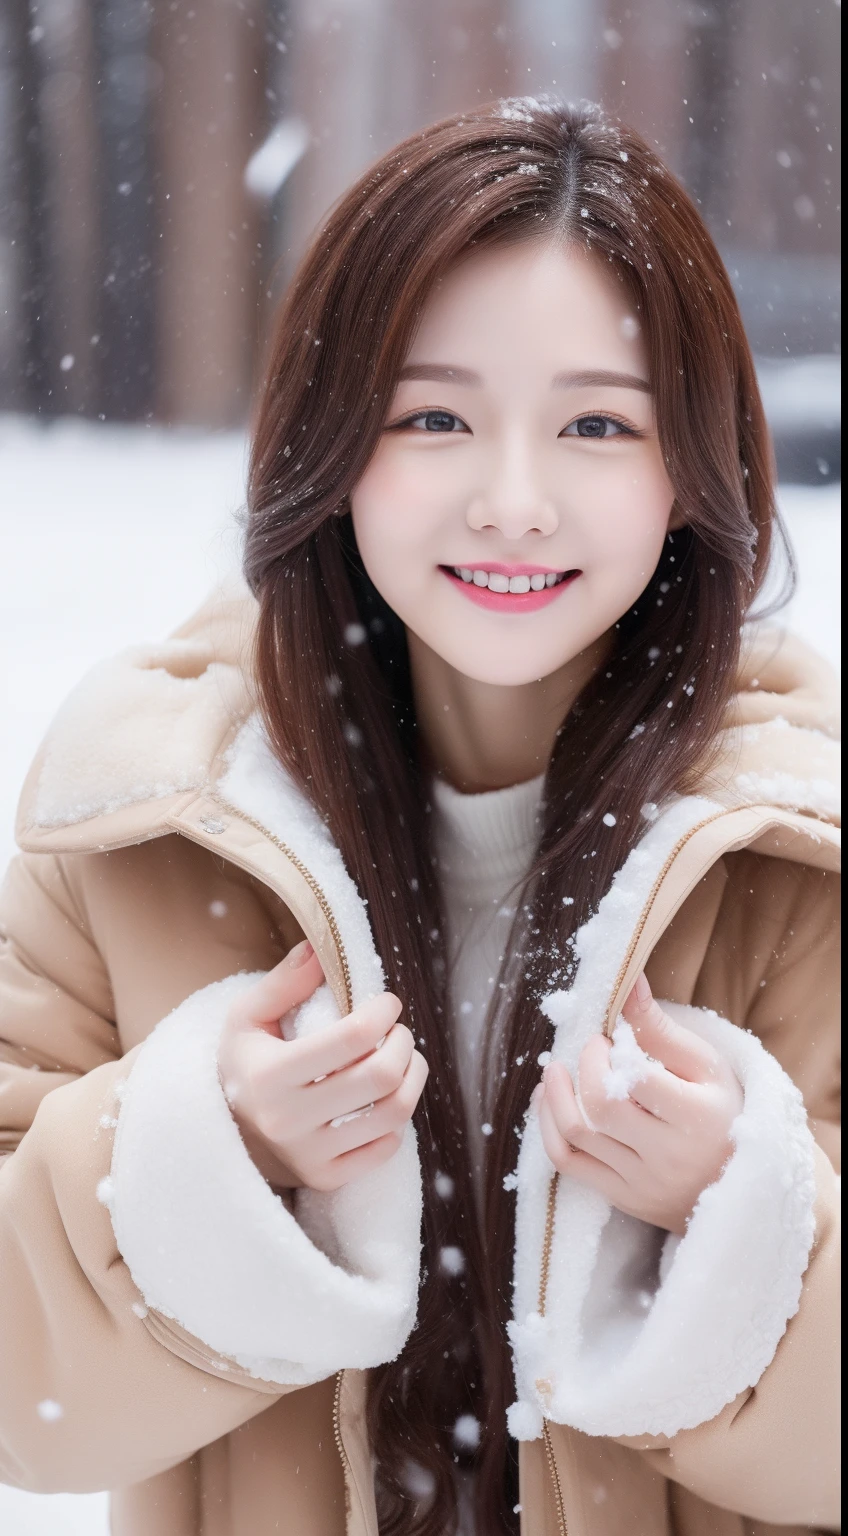 fotos realistas de 1 linda estrela coreana, cabelo multi-amarrado , Pele branca, maquiagem fina, Tamanho dos seios de 32 polegadas, sorria levemente, casaco de pele marrom, brincando de neve, neve caindo, tronco, Ultra HD